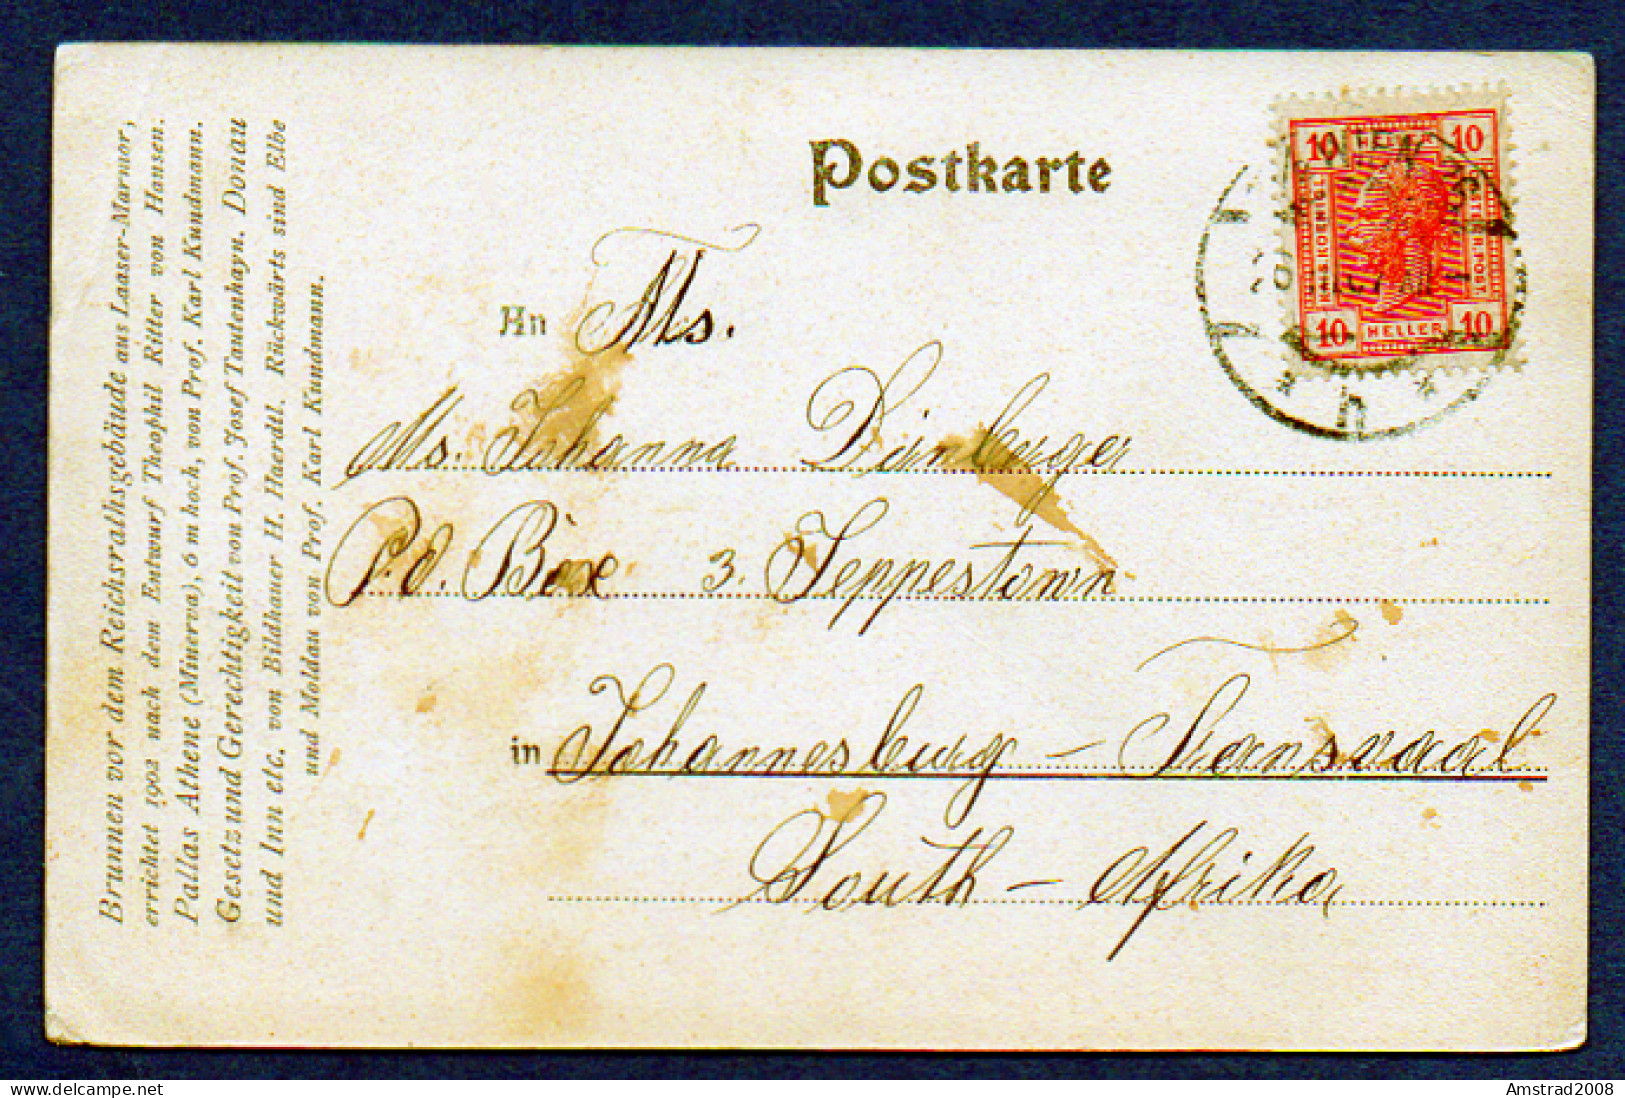 1903 - WIEN - MONUMENTALBRUNNEN - FRANZENSRING .  K.  K.  HOFBURGTHEATER  - AUTRICHE - OSTERREICH - Prater